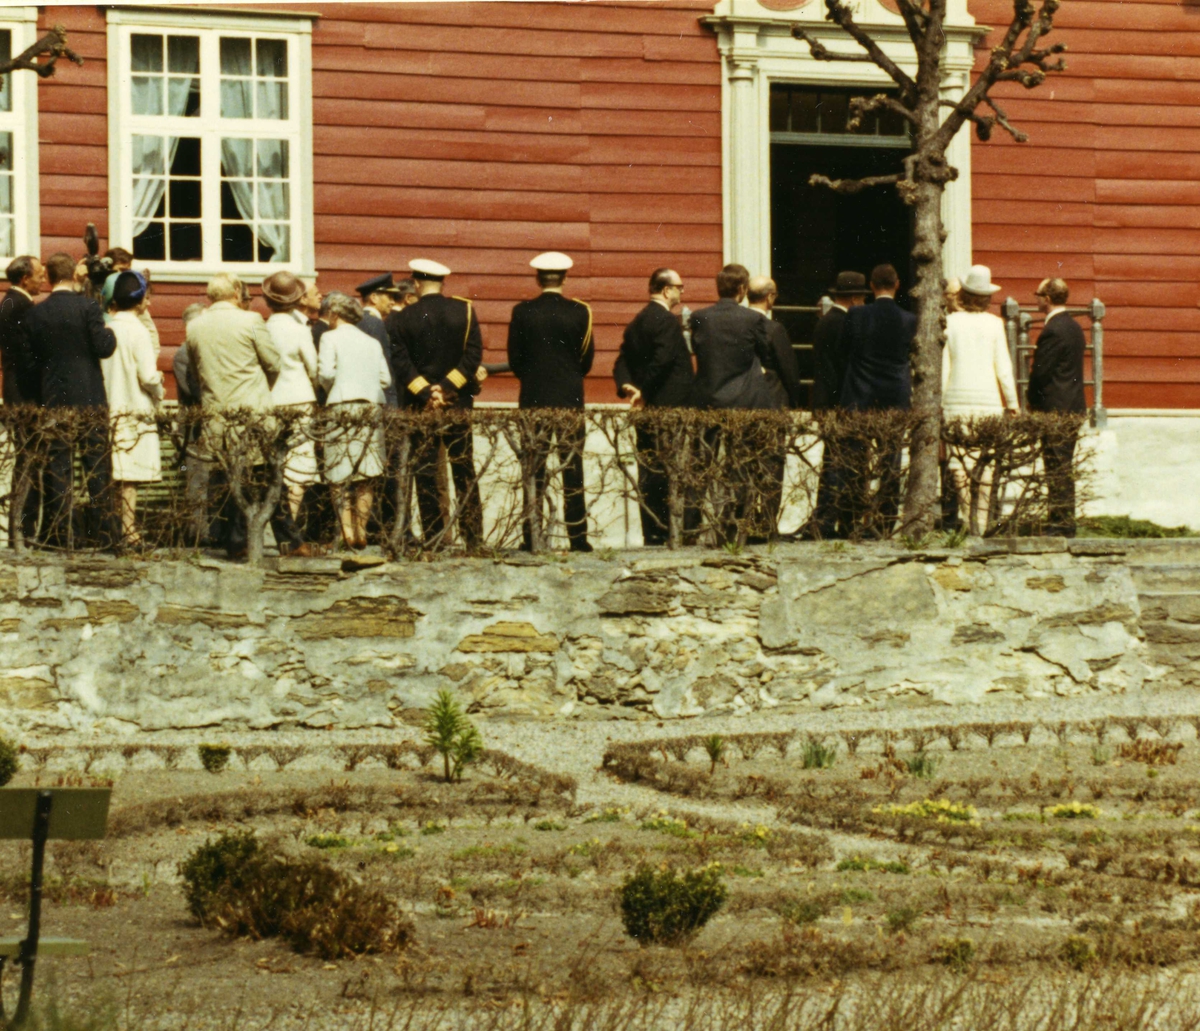 Islands president besøker NF 4/5 1971. Følget ved Leikanger prestegård/Thaulowmuseet, NF.